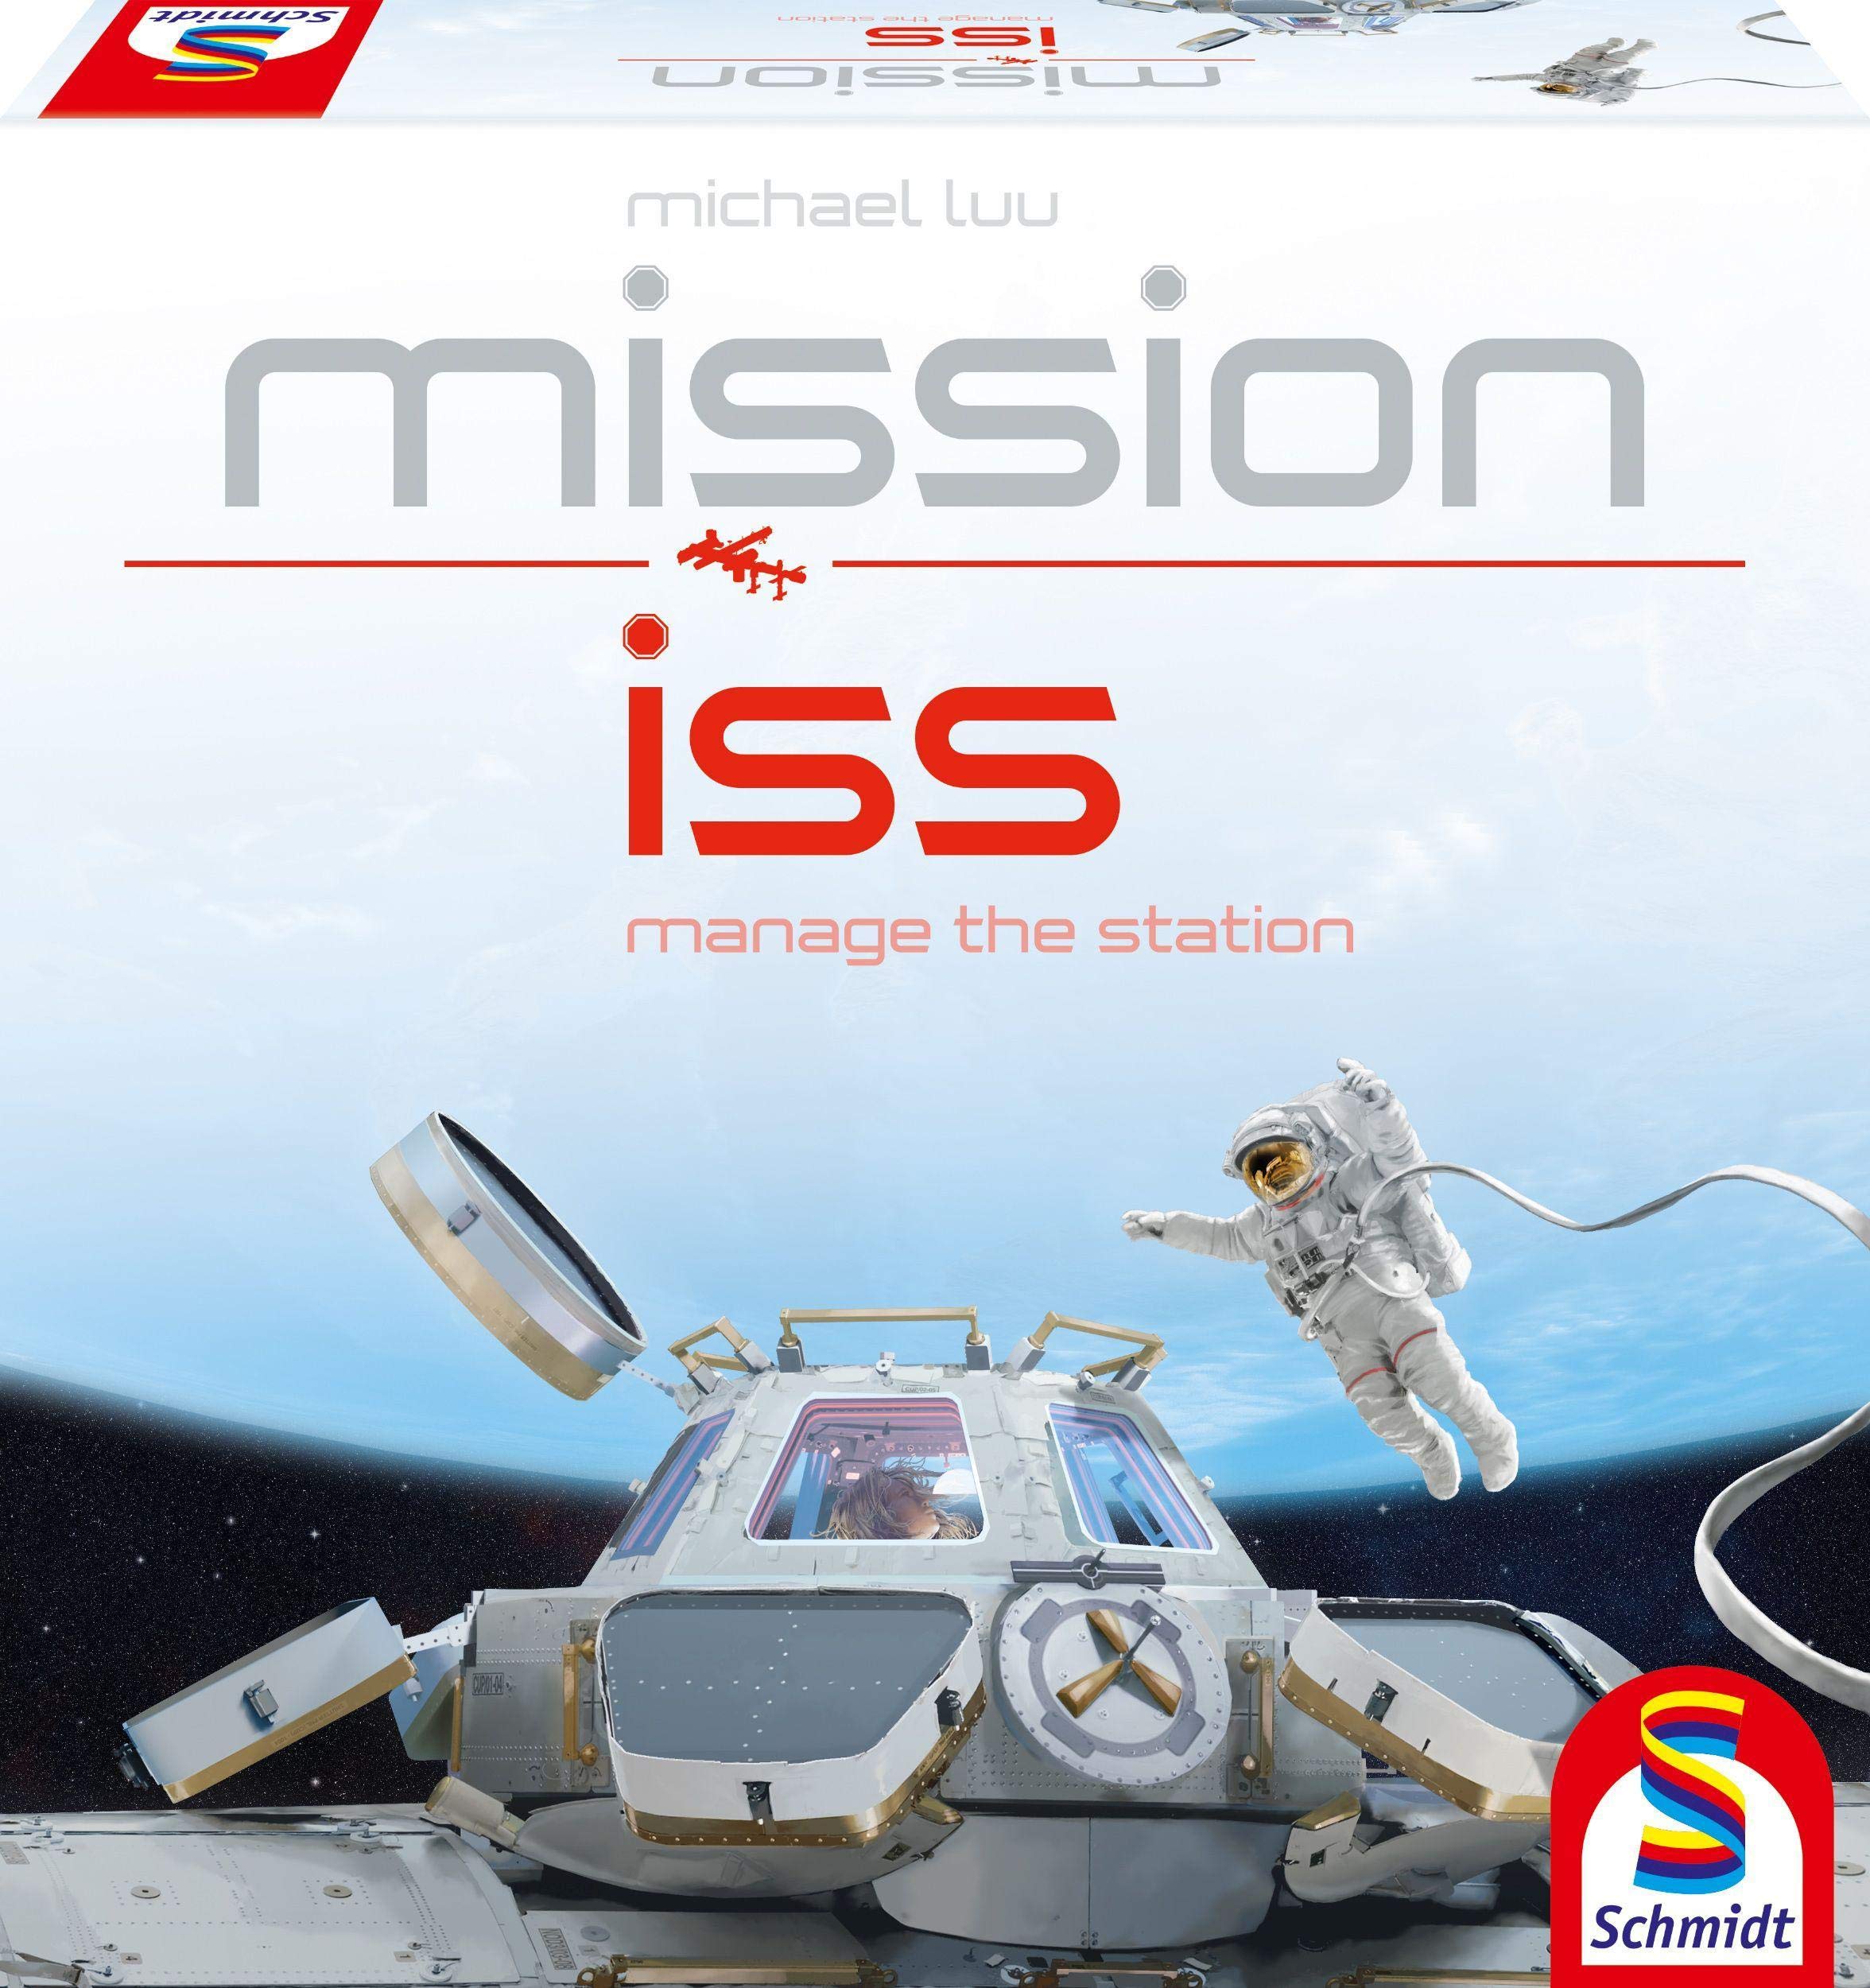 Schmidt Spiele 49393 Mission ISS, Strategiespiel, Bunt